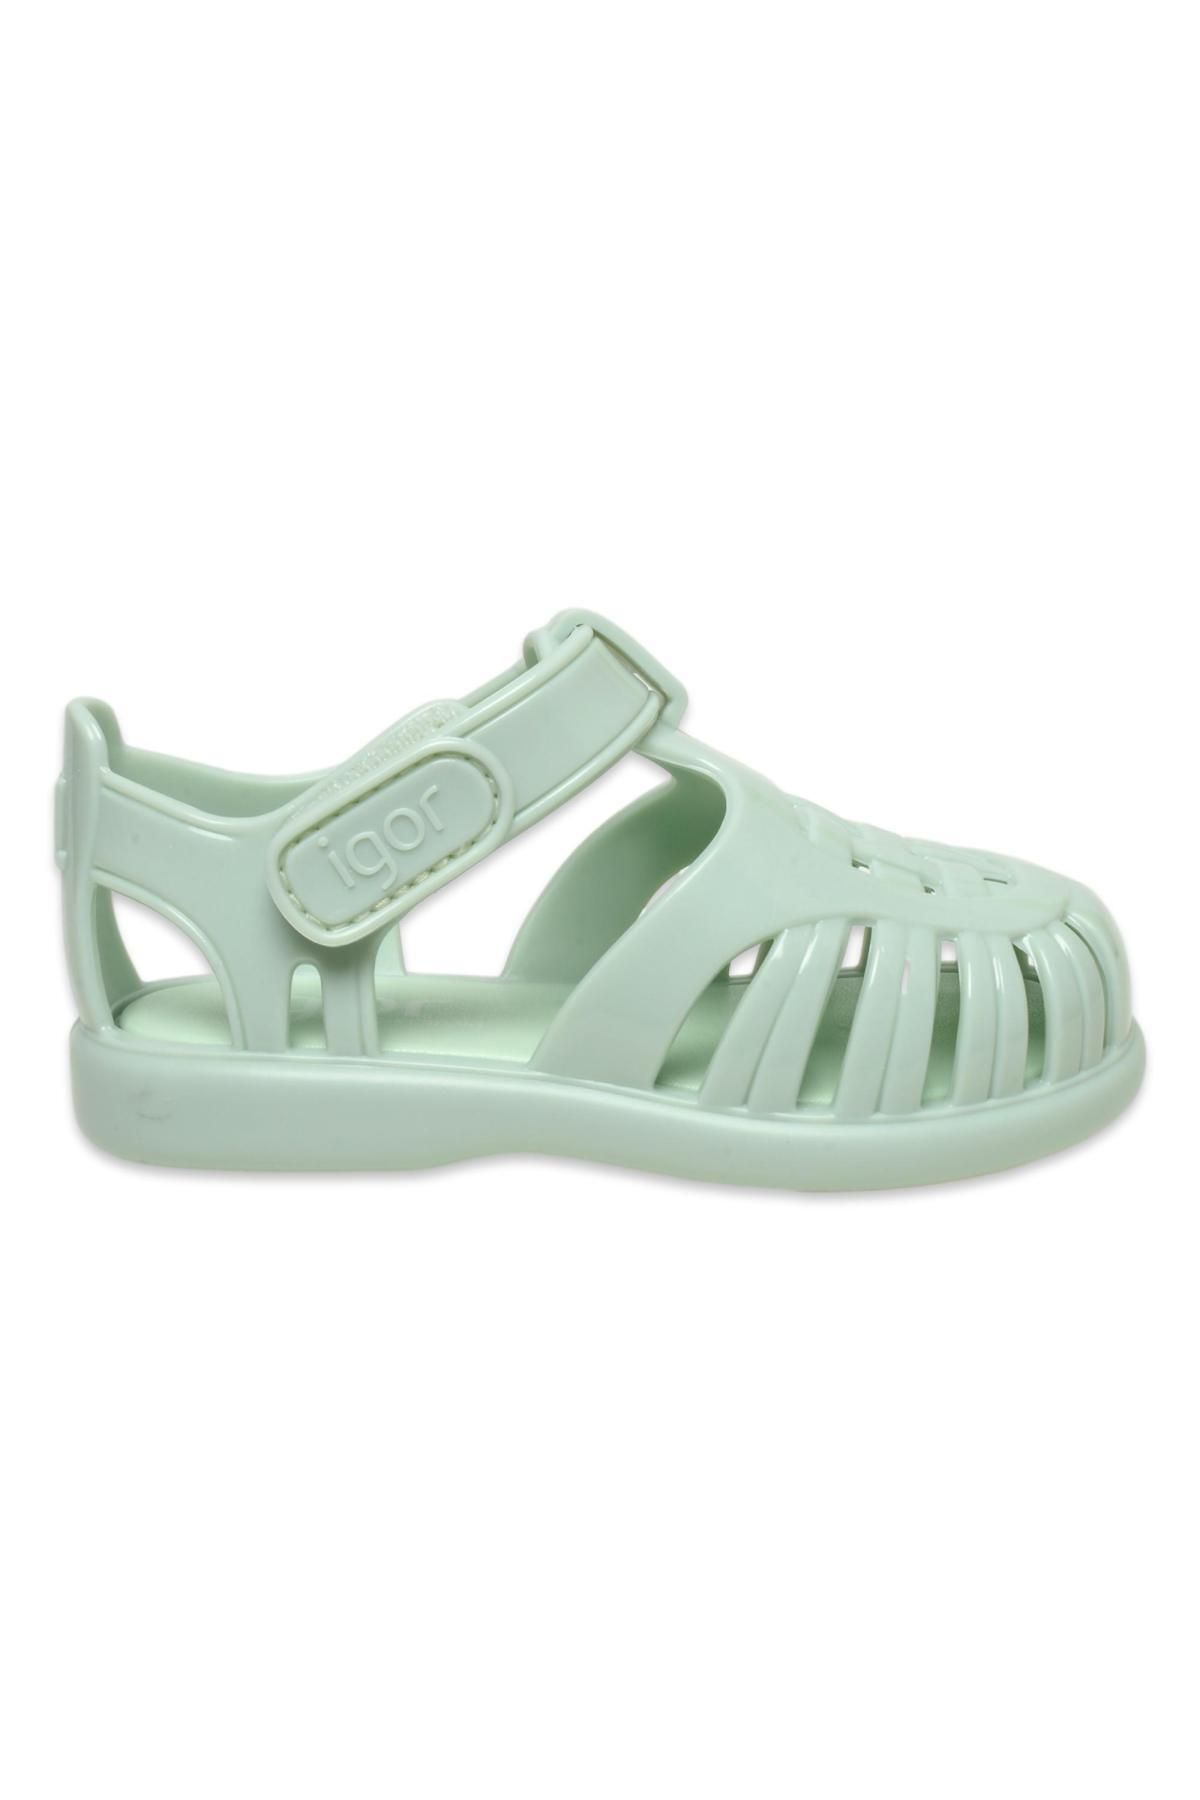 IGOR S10311K Tobby Gloss Yeşil Kız Çocuk Sandalet